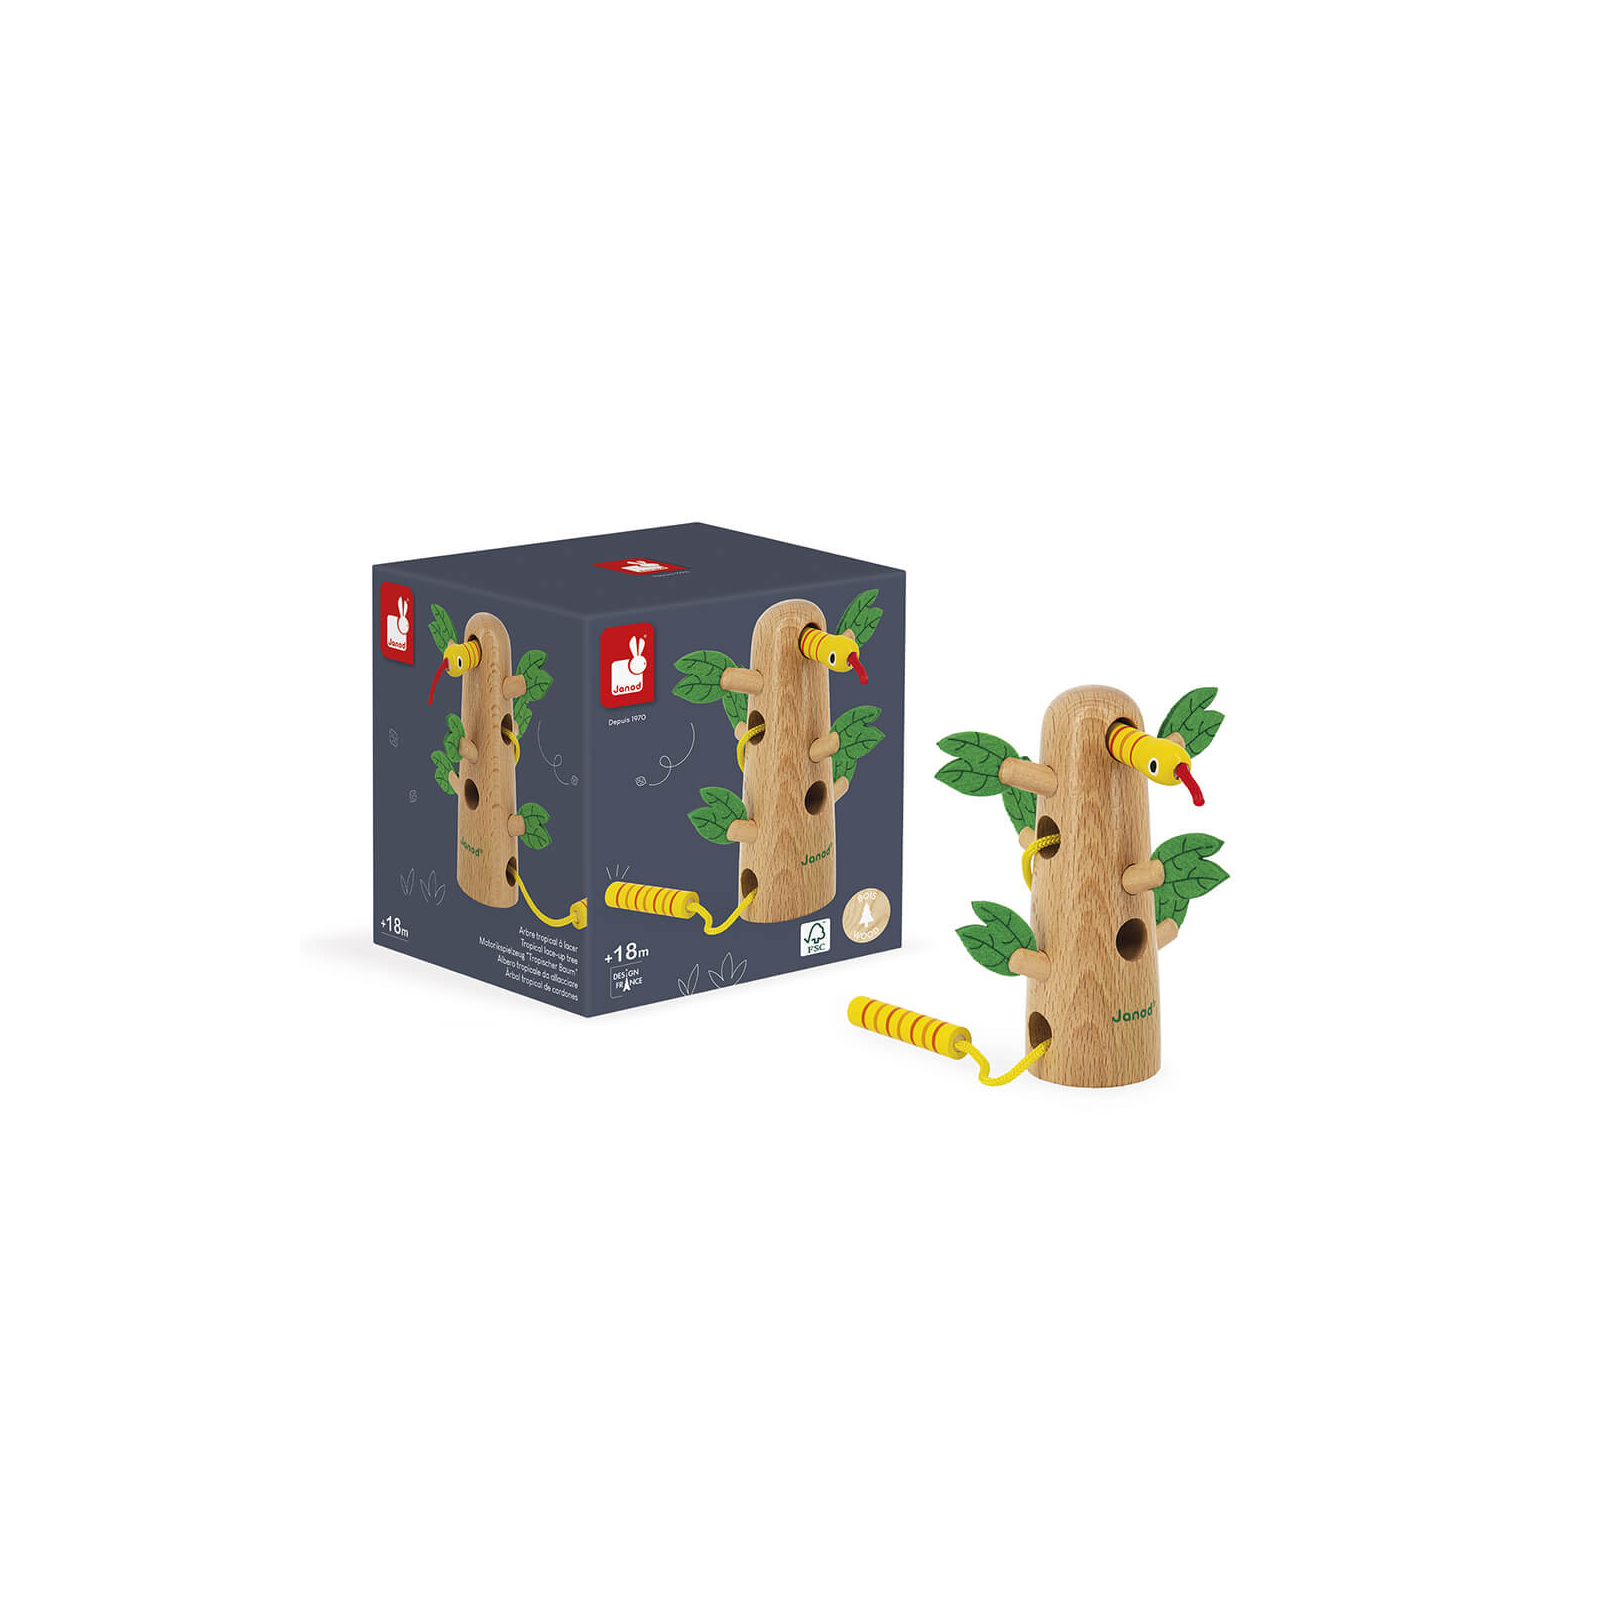 Розвиваюча іграшка Janod Шнурівка дерево тропік (J08265)